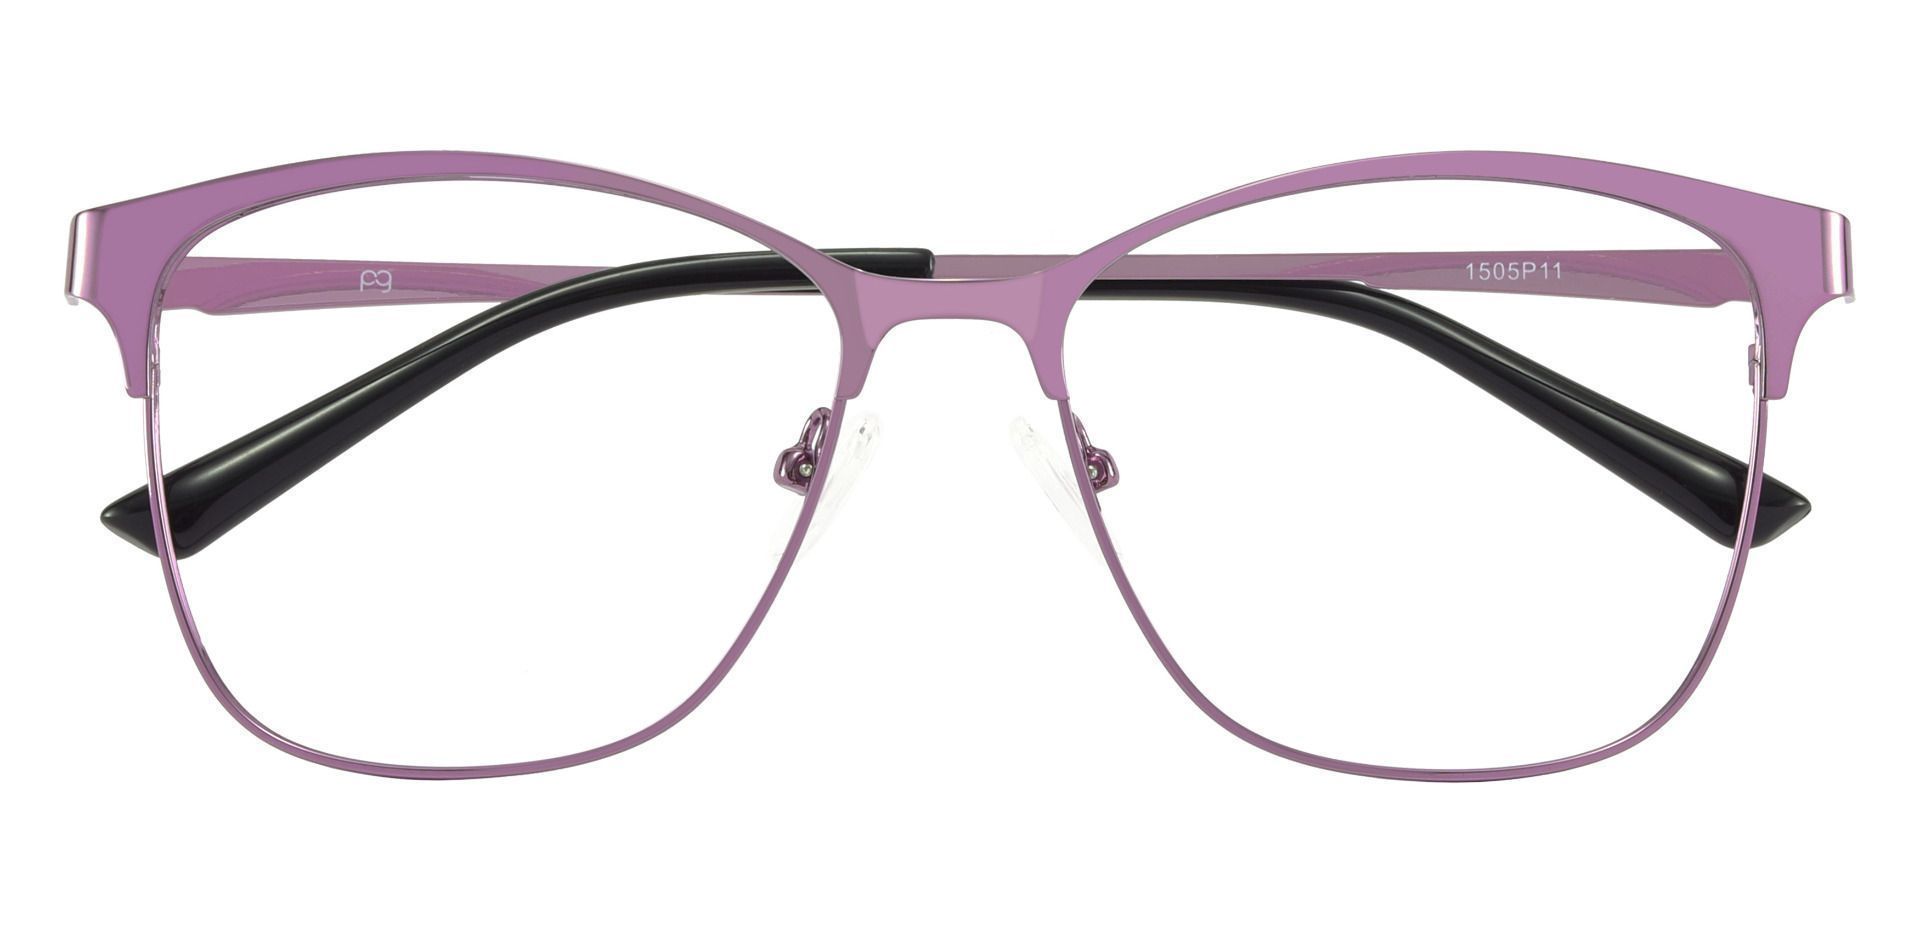 Briony Square Prescription Glasses - Purple